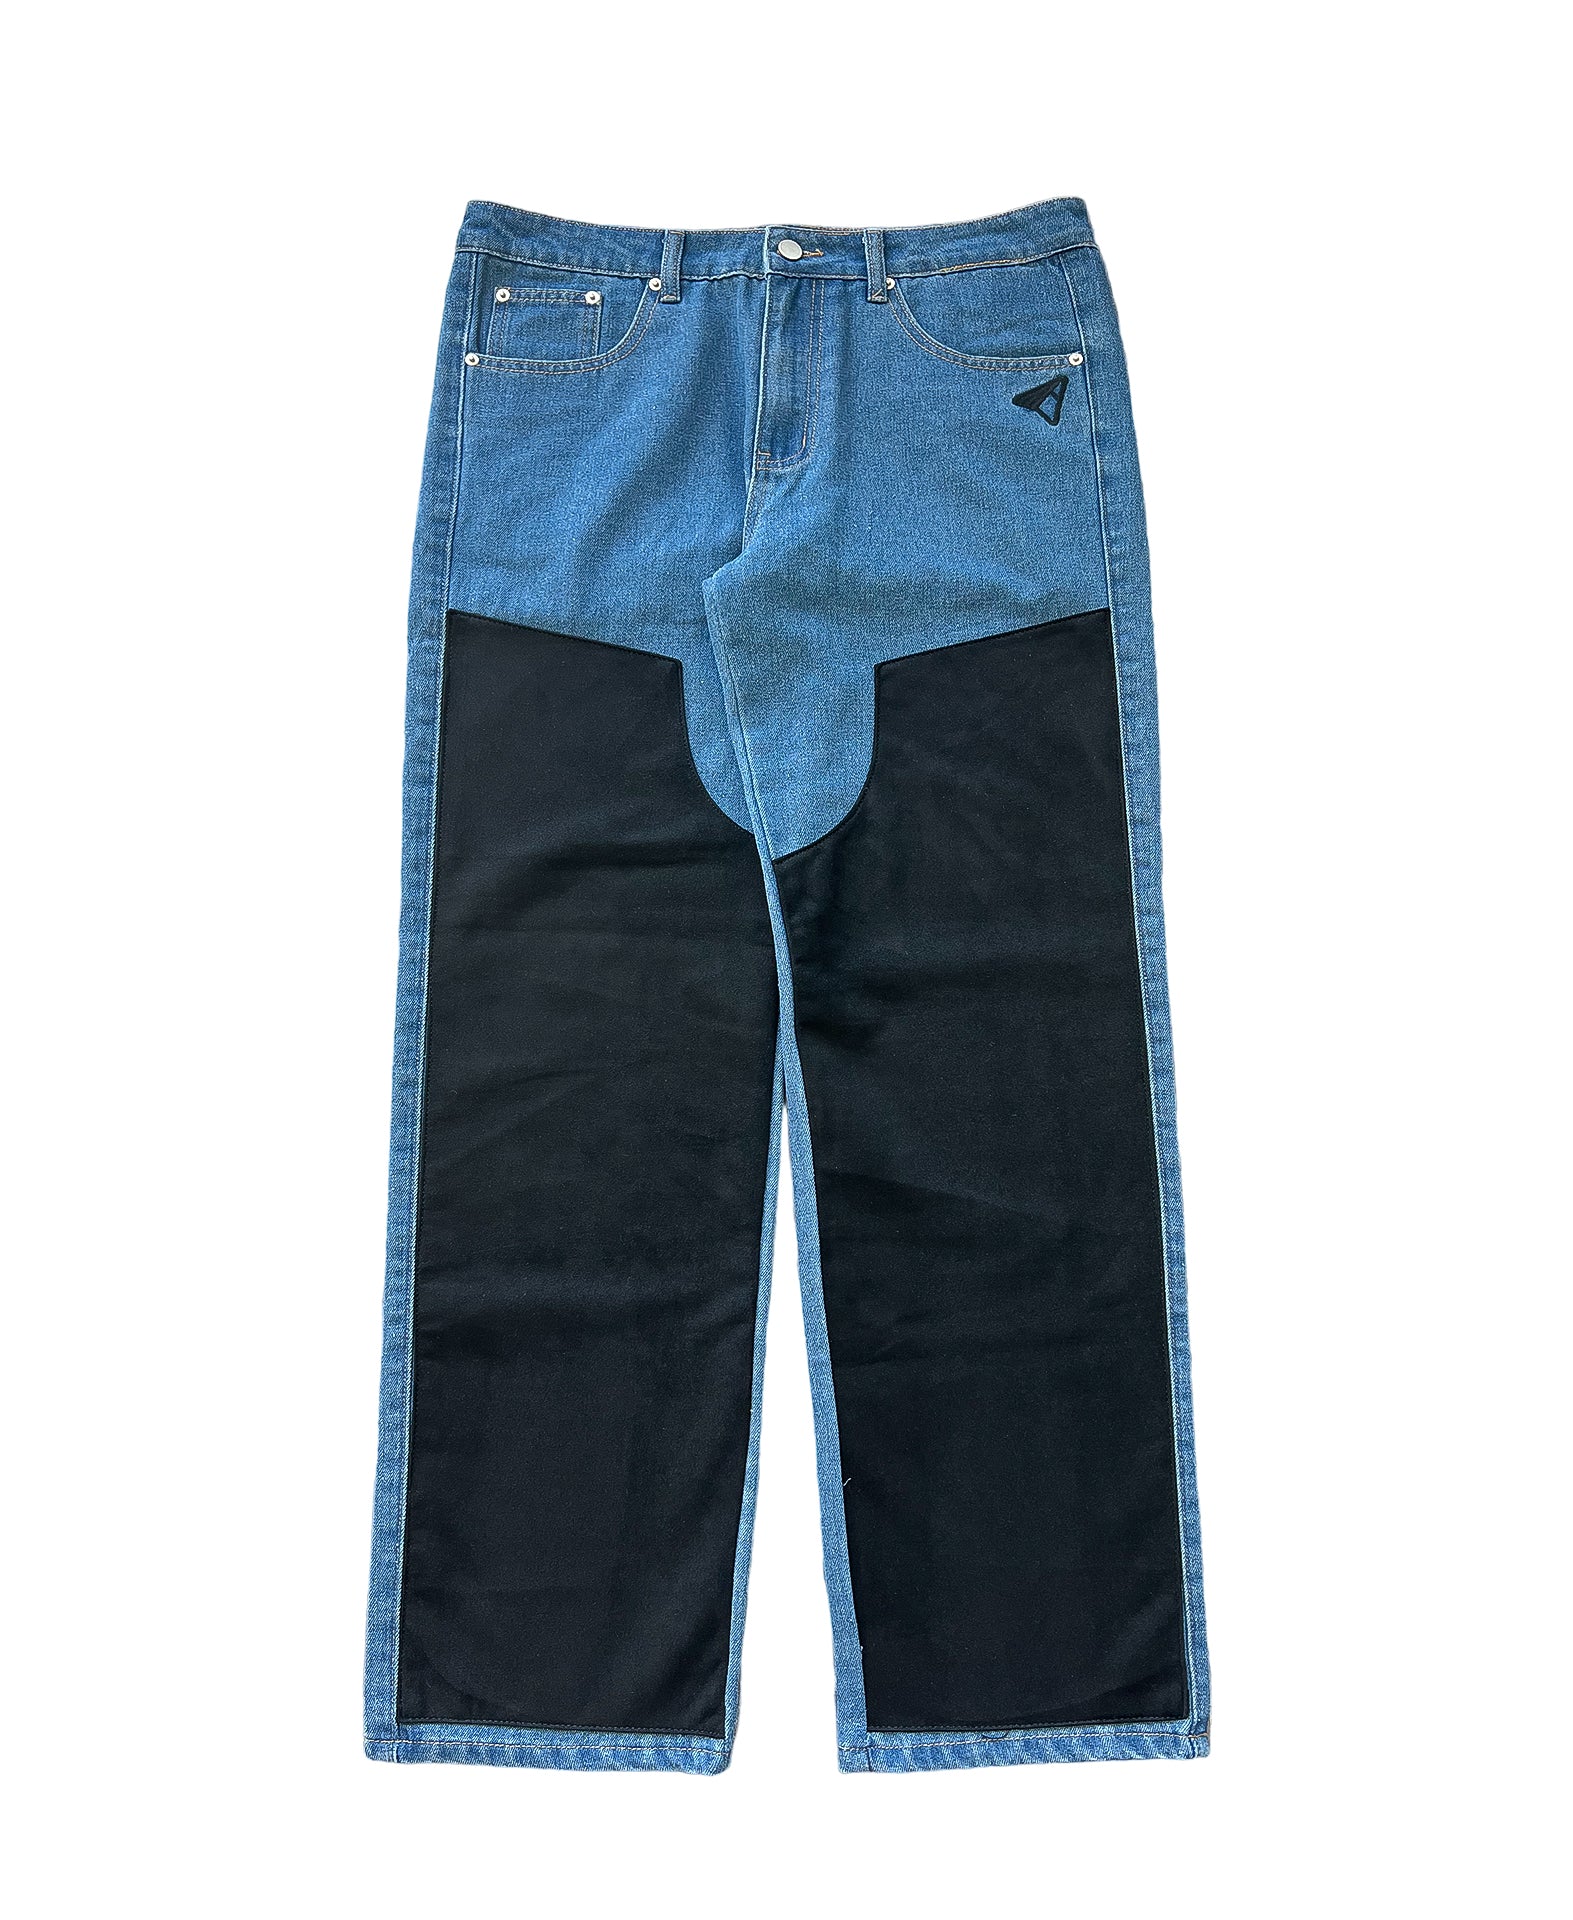 Suede Chap Jeans - Blue